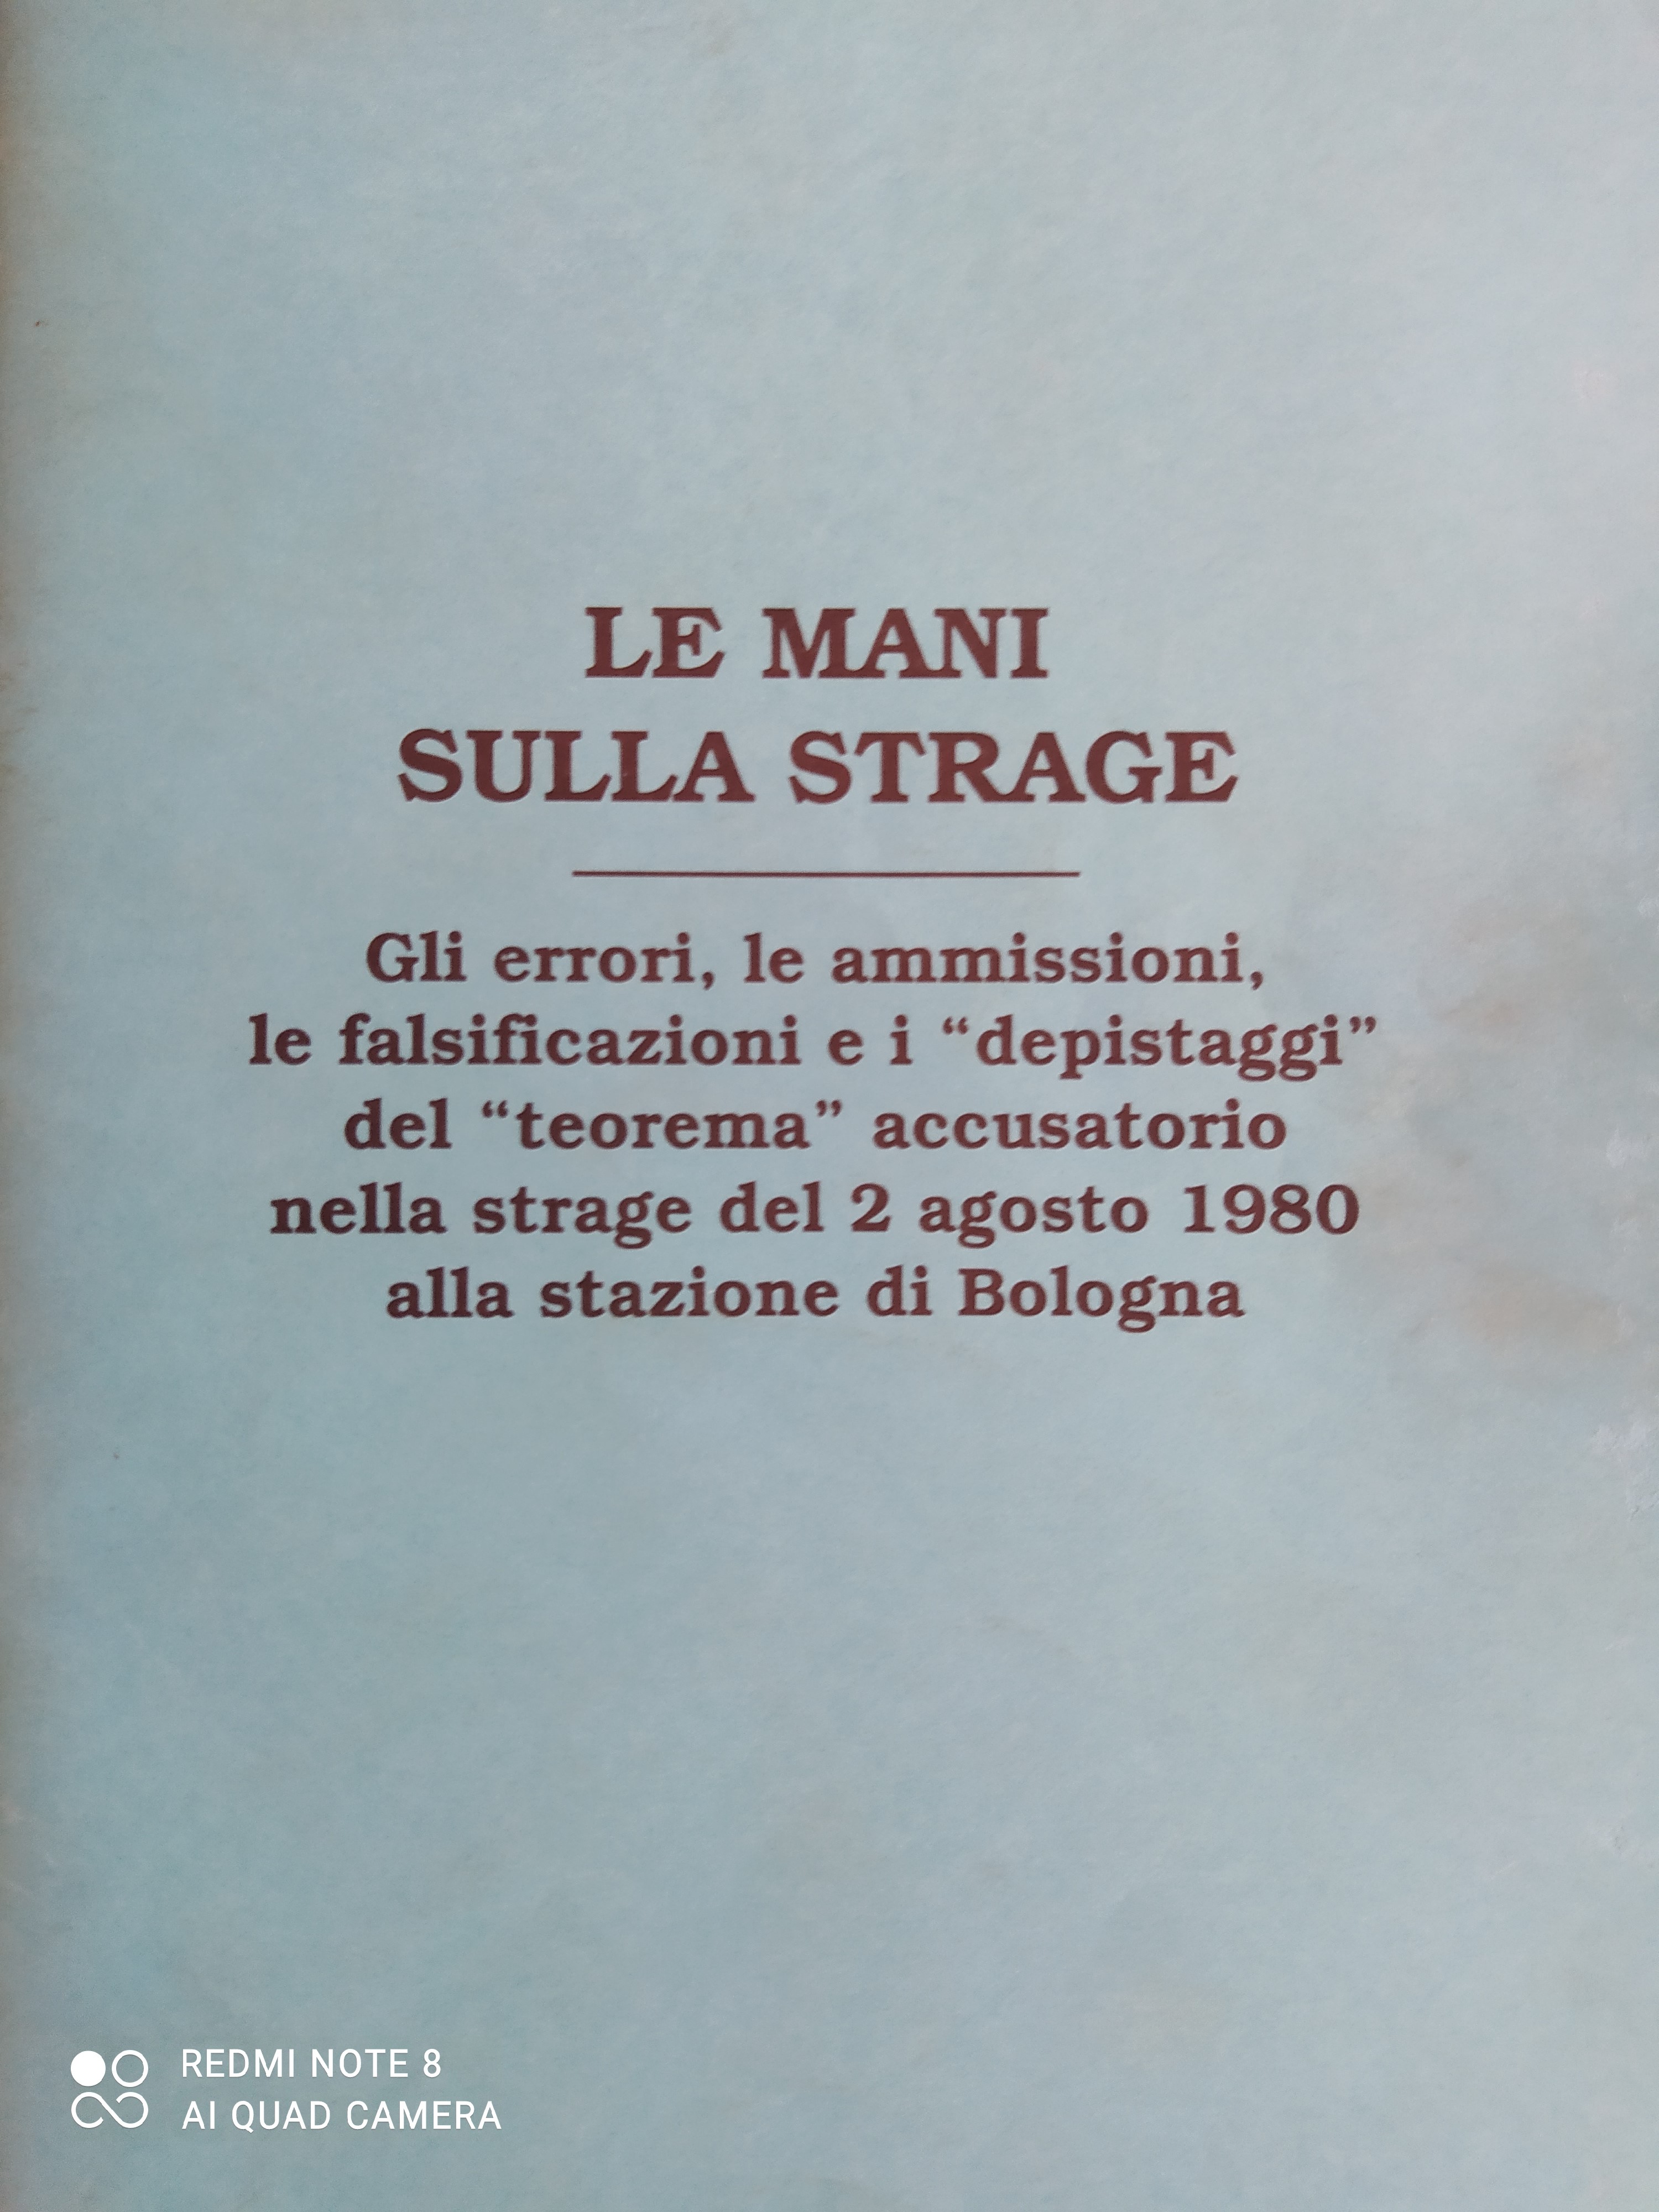 Bologna inserto "il Borghese" n. 42, 15 ottobre 1989, "Le mani sulla strage"